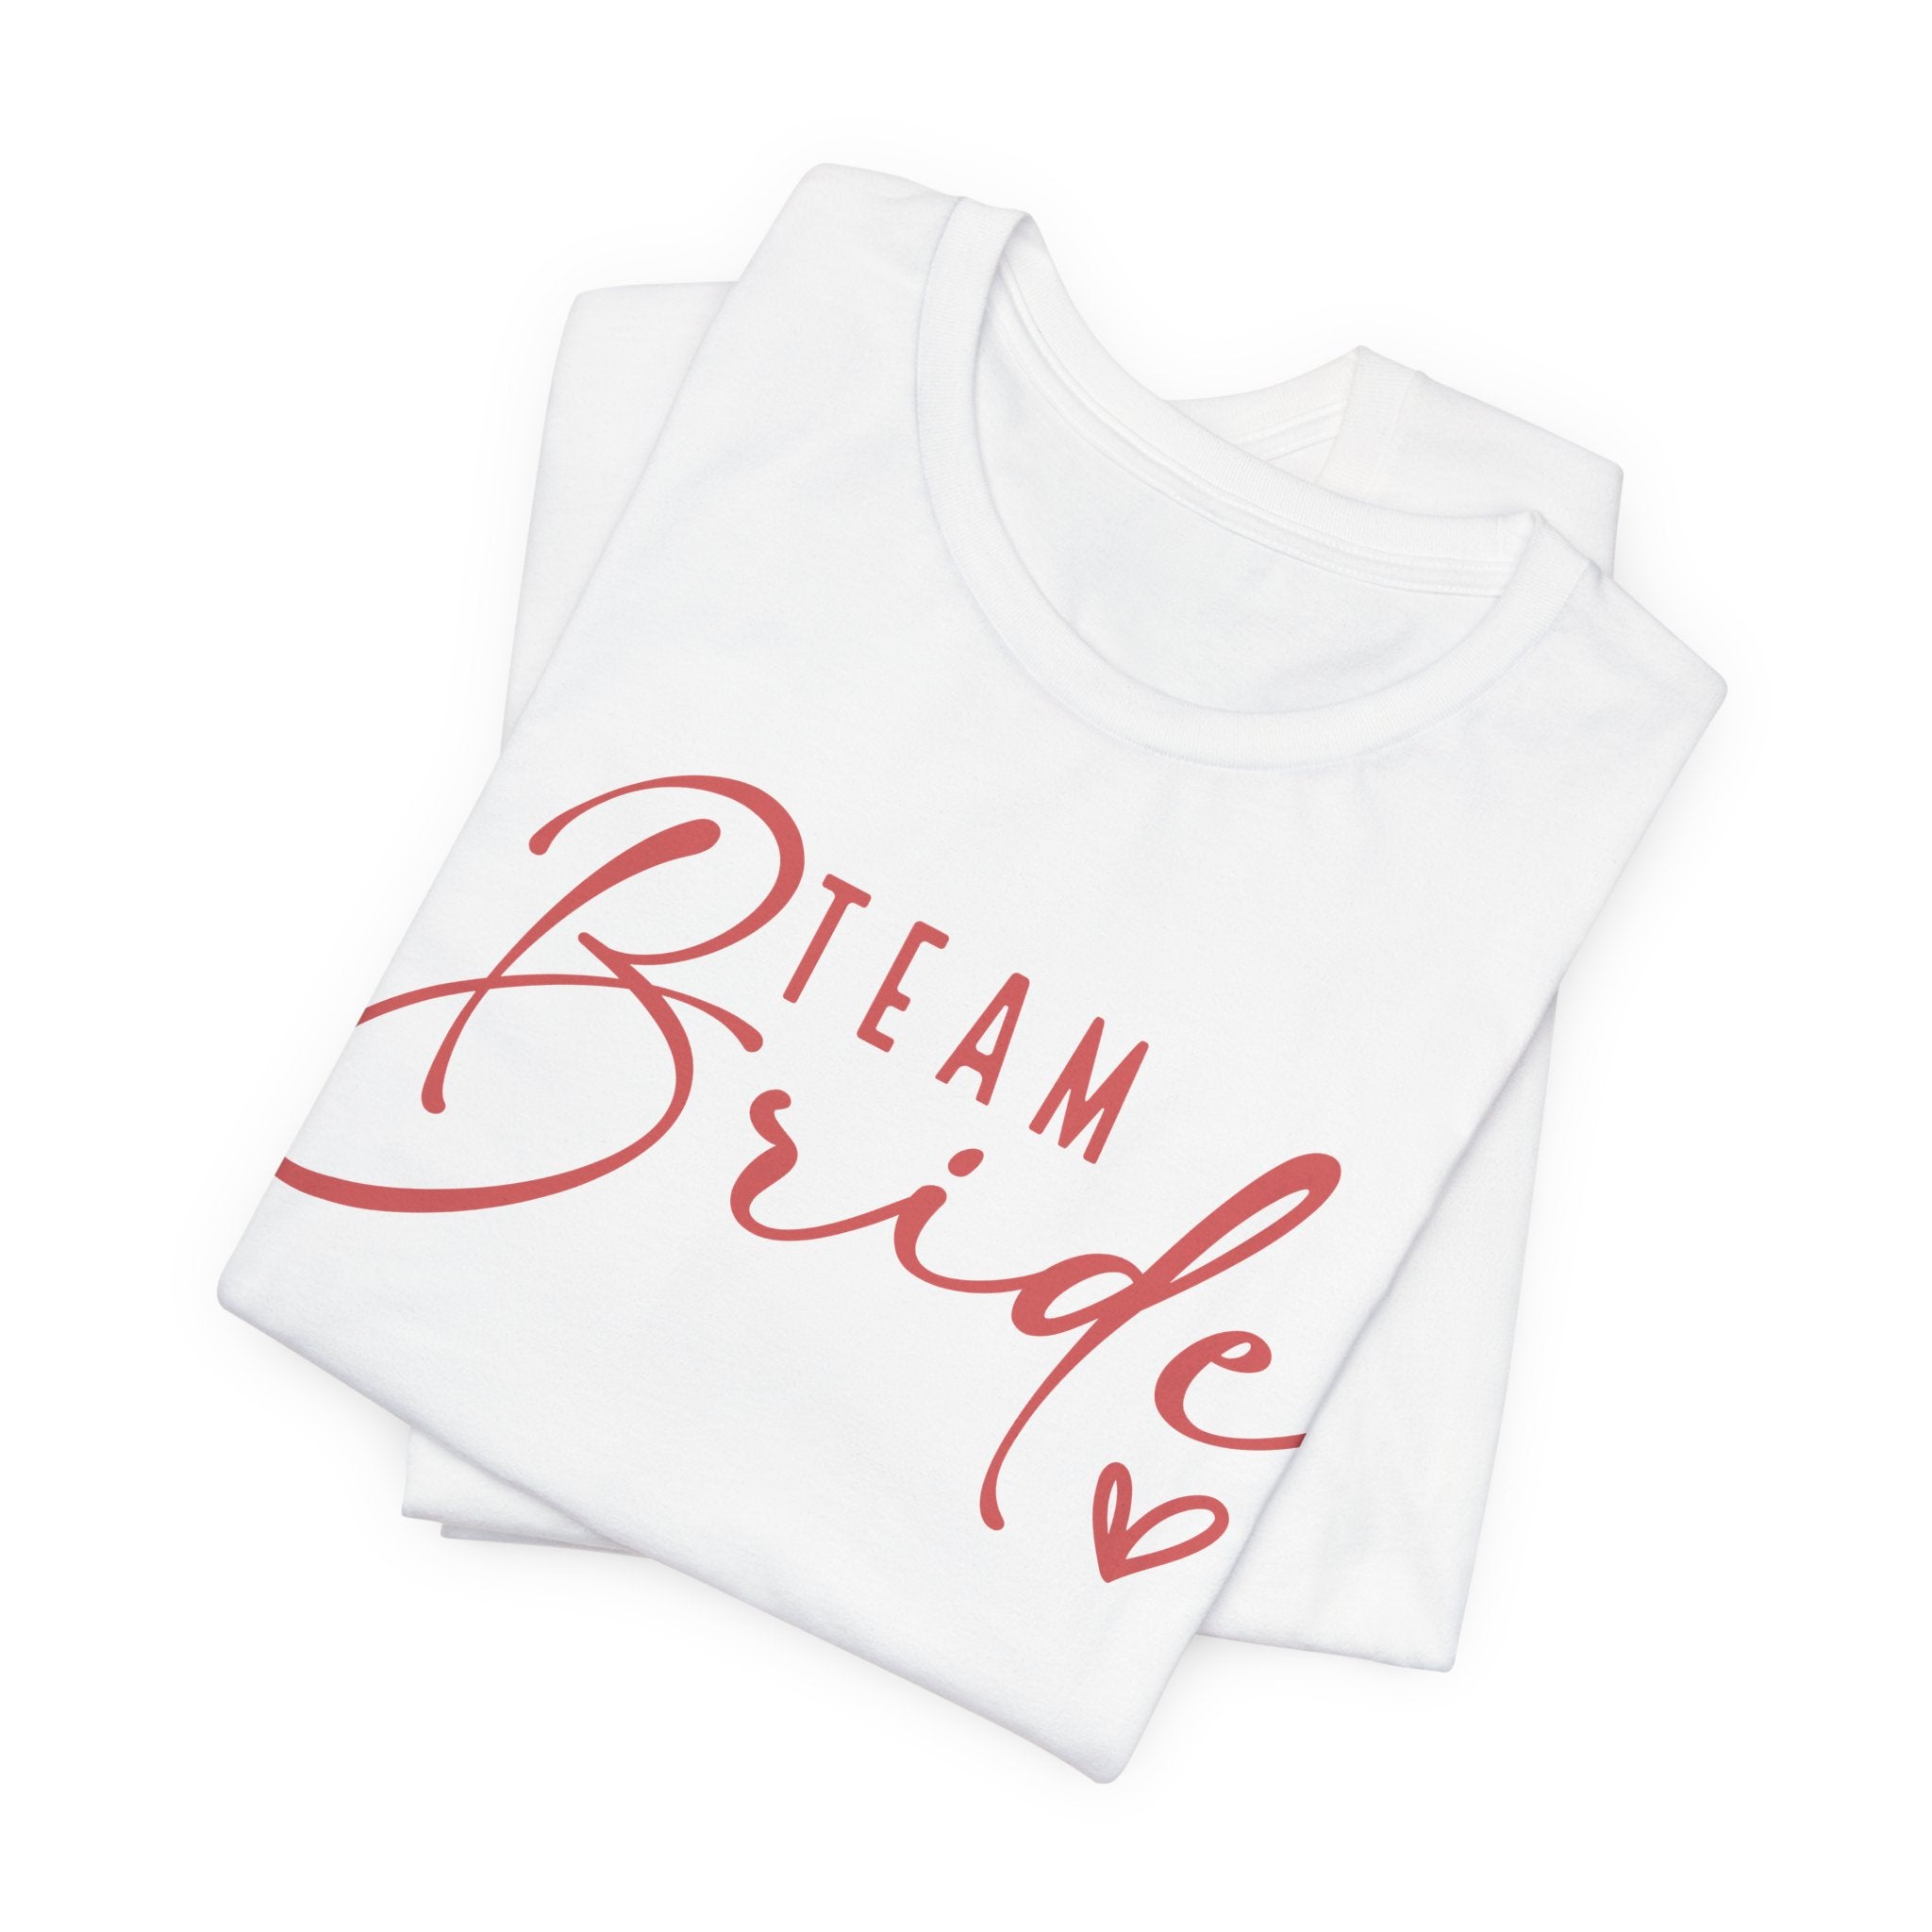 Team Bride Heart T-Shirt